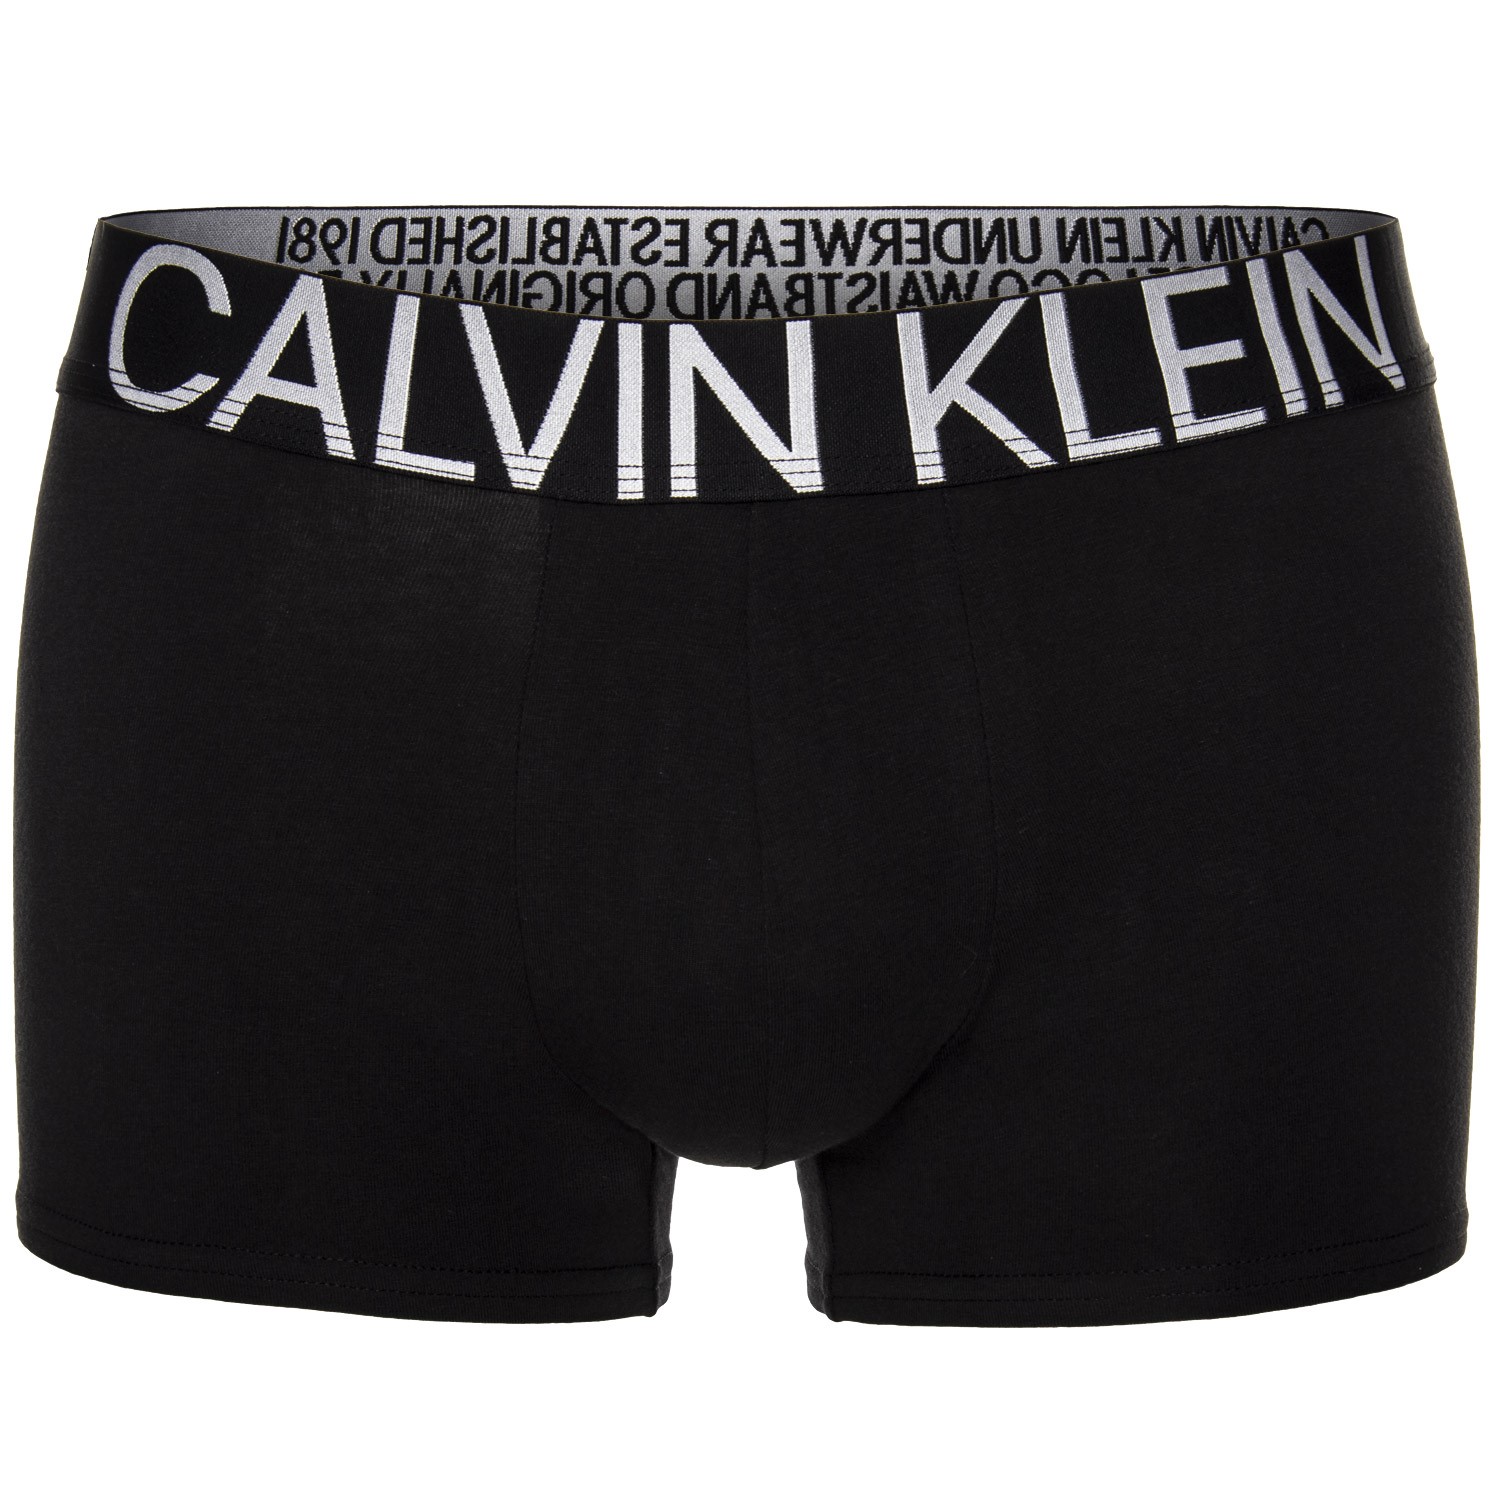 Calvin Klein Statement 1981 Cotton Trunk